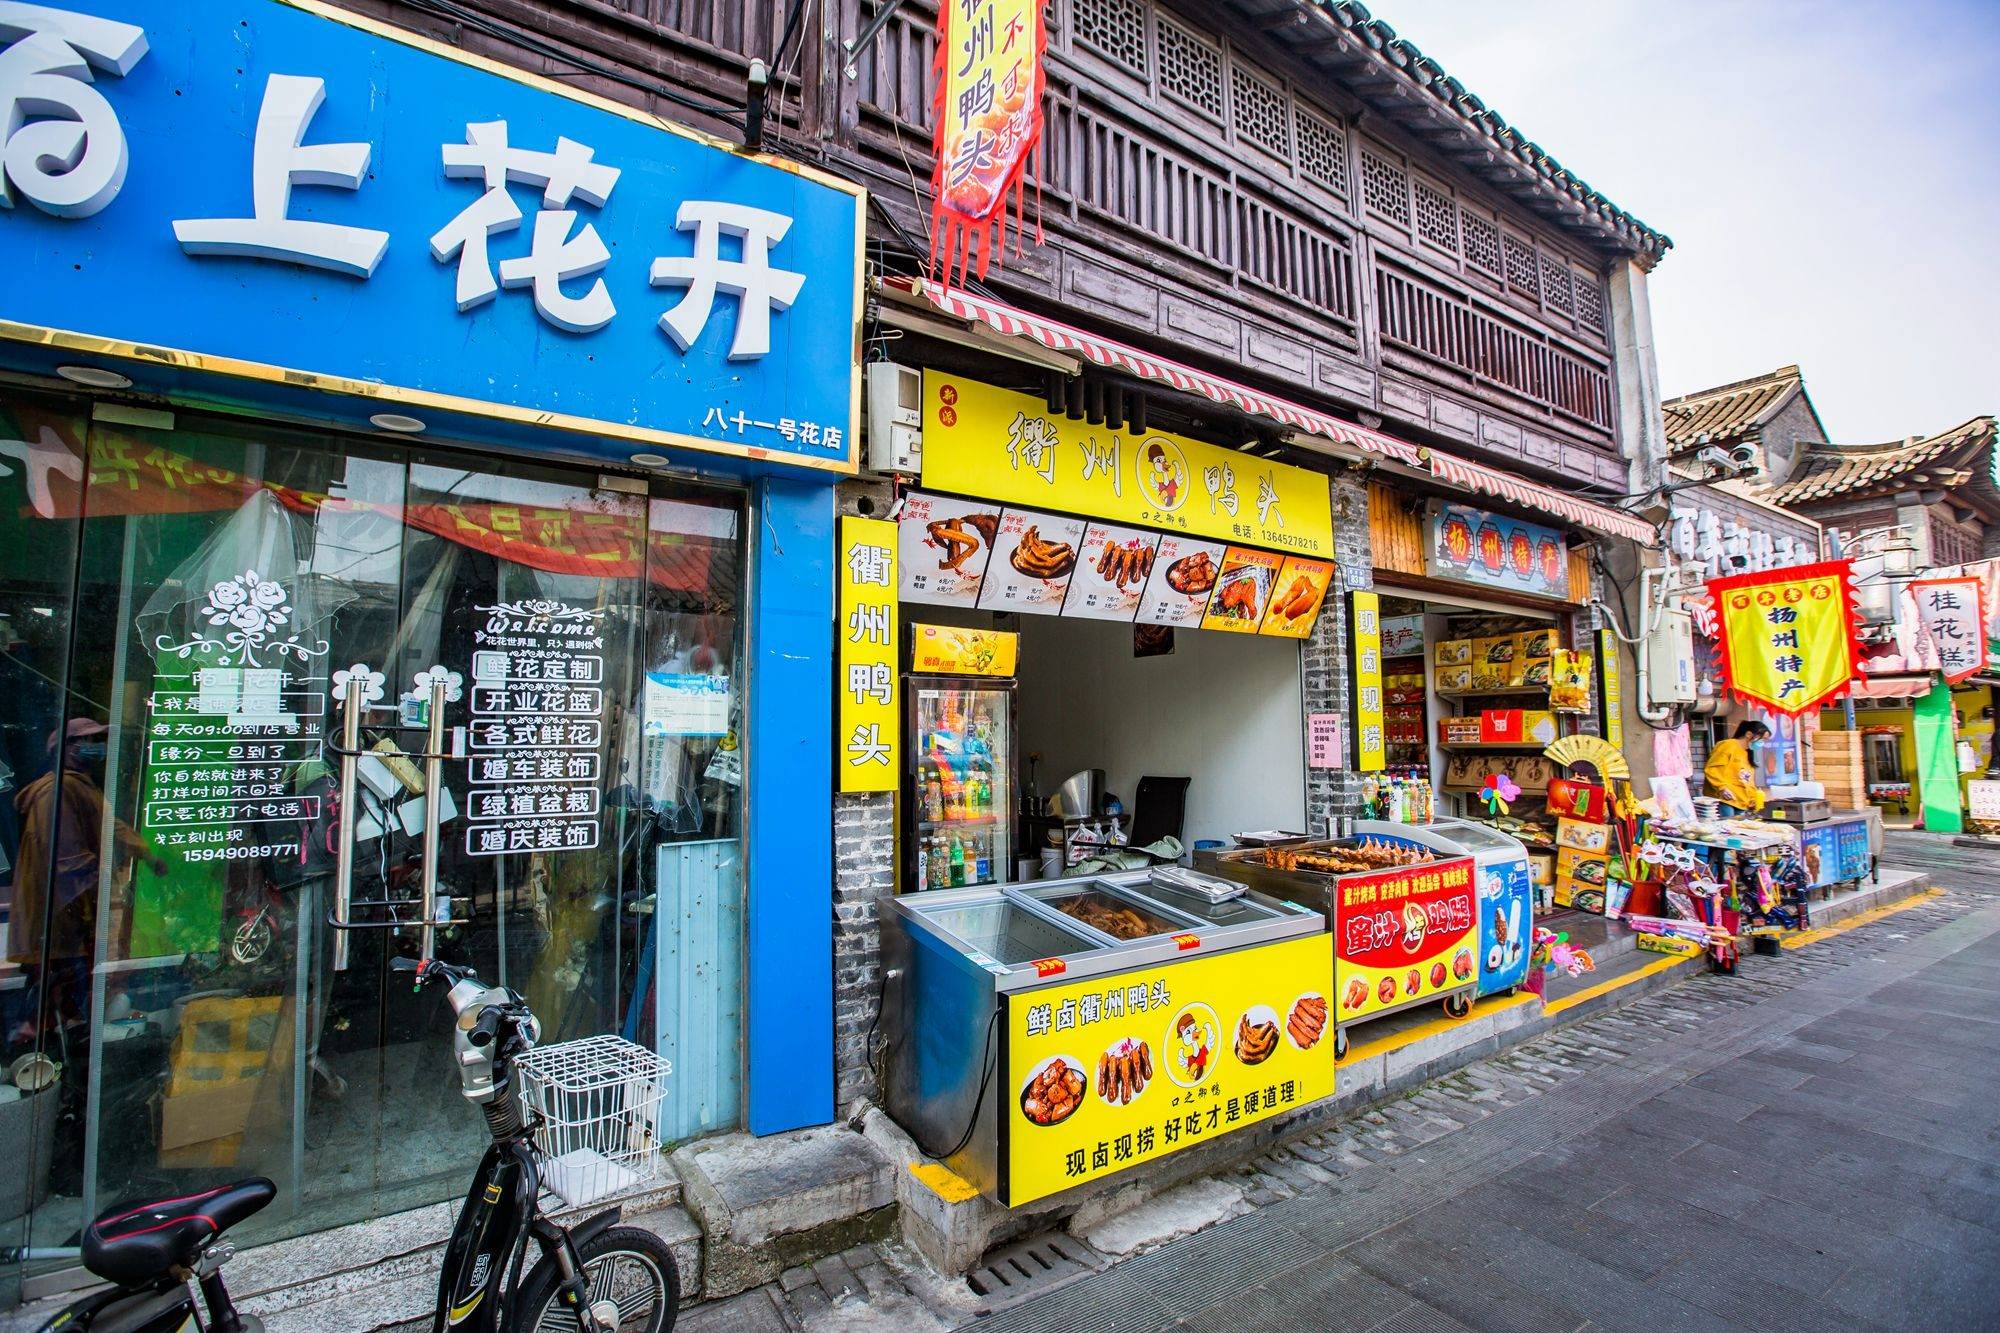 2022老街饭庄(扬子江北路总店)美食餐厅,在扬州吃的一家性价比餐厅 四...【去哪儿攻略】